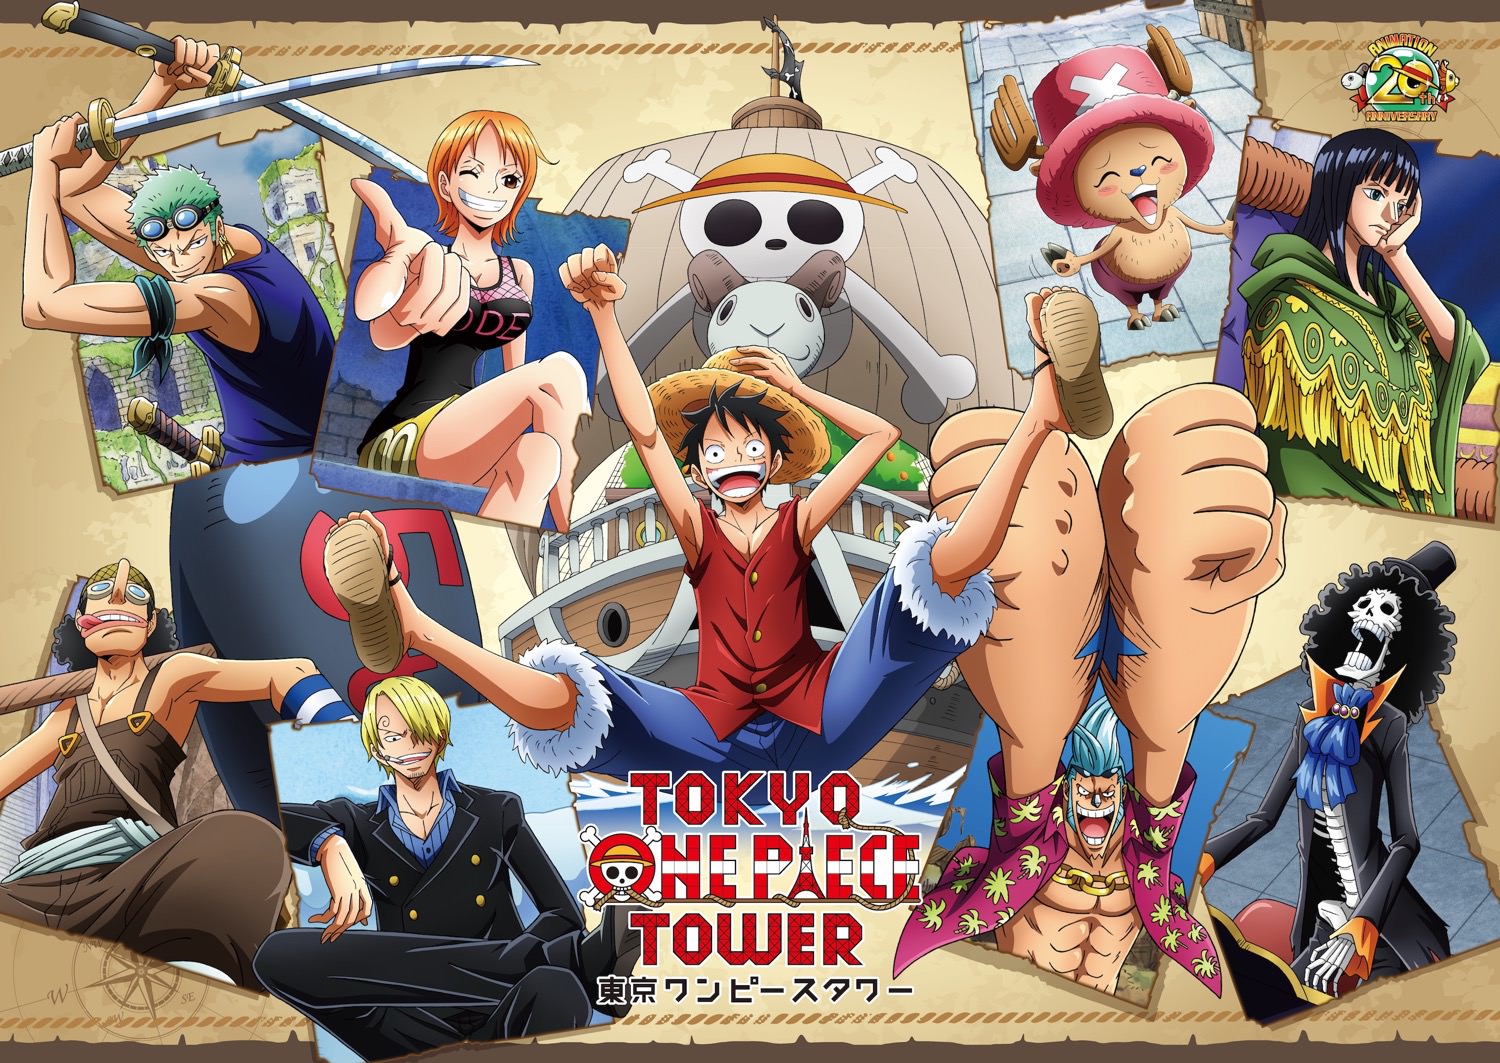 東京ワンピースタワー 4.24よりアニメ20年分の企画展 Cruise History 出航!